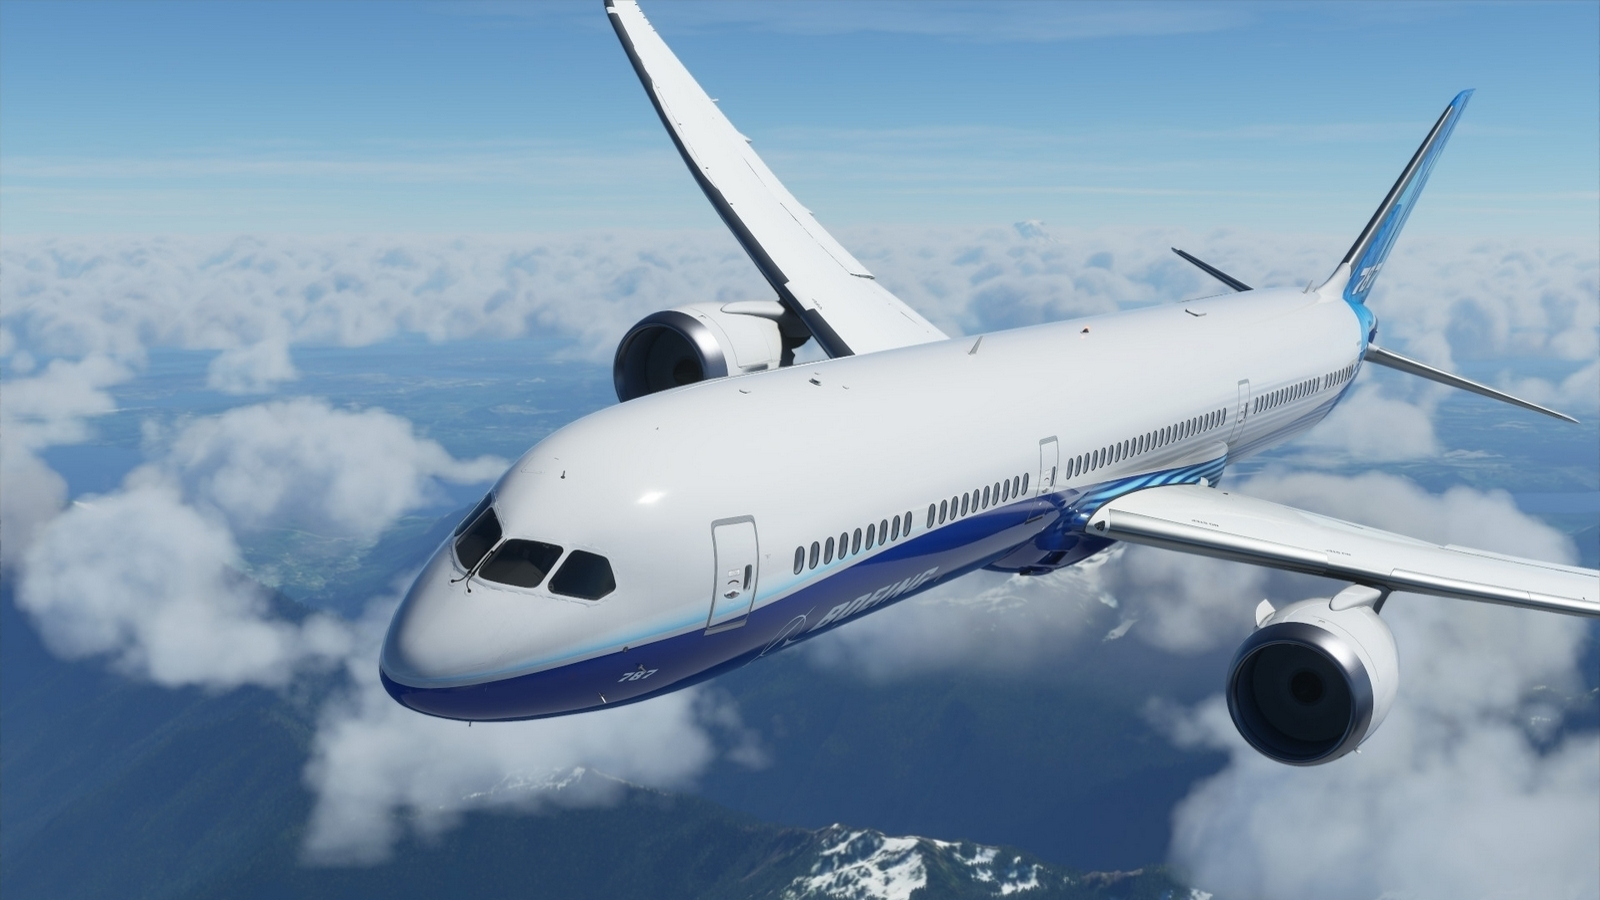 Microsoft Flight Simulator Is On Sale - IGN